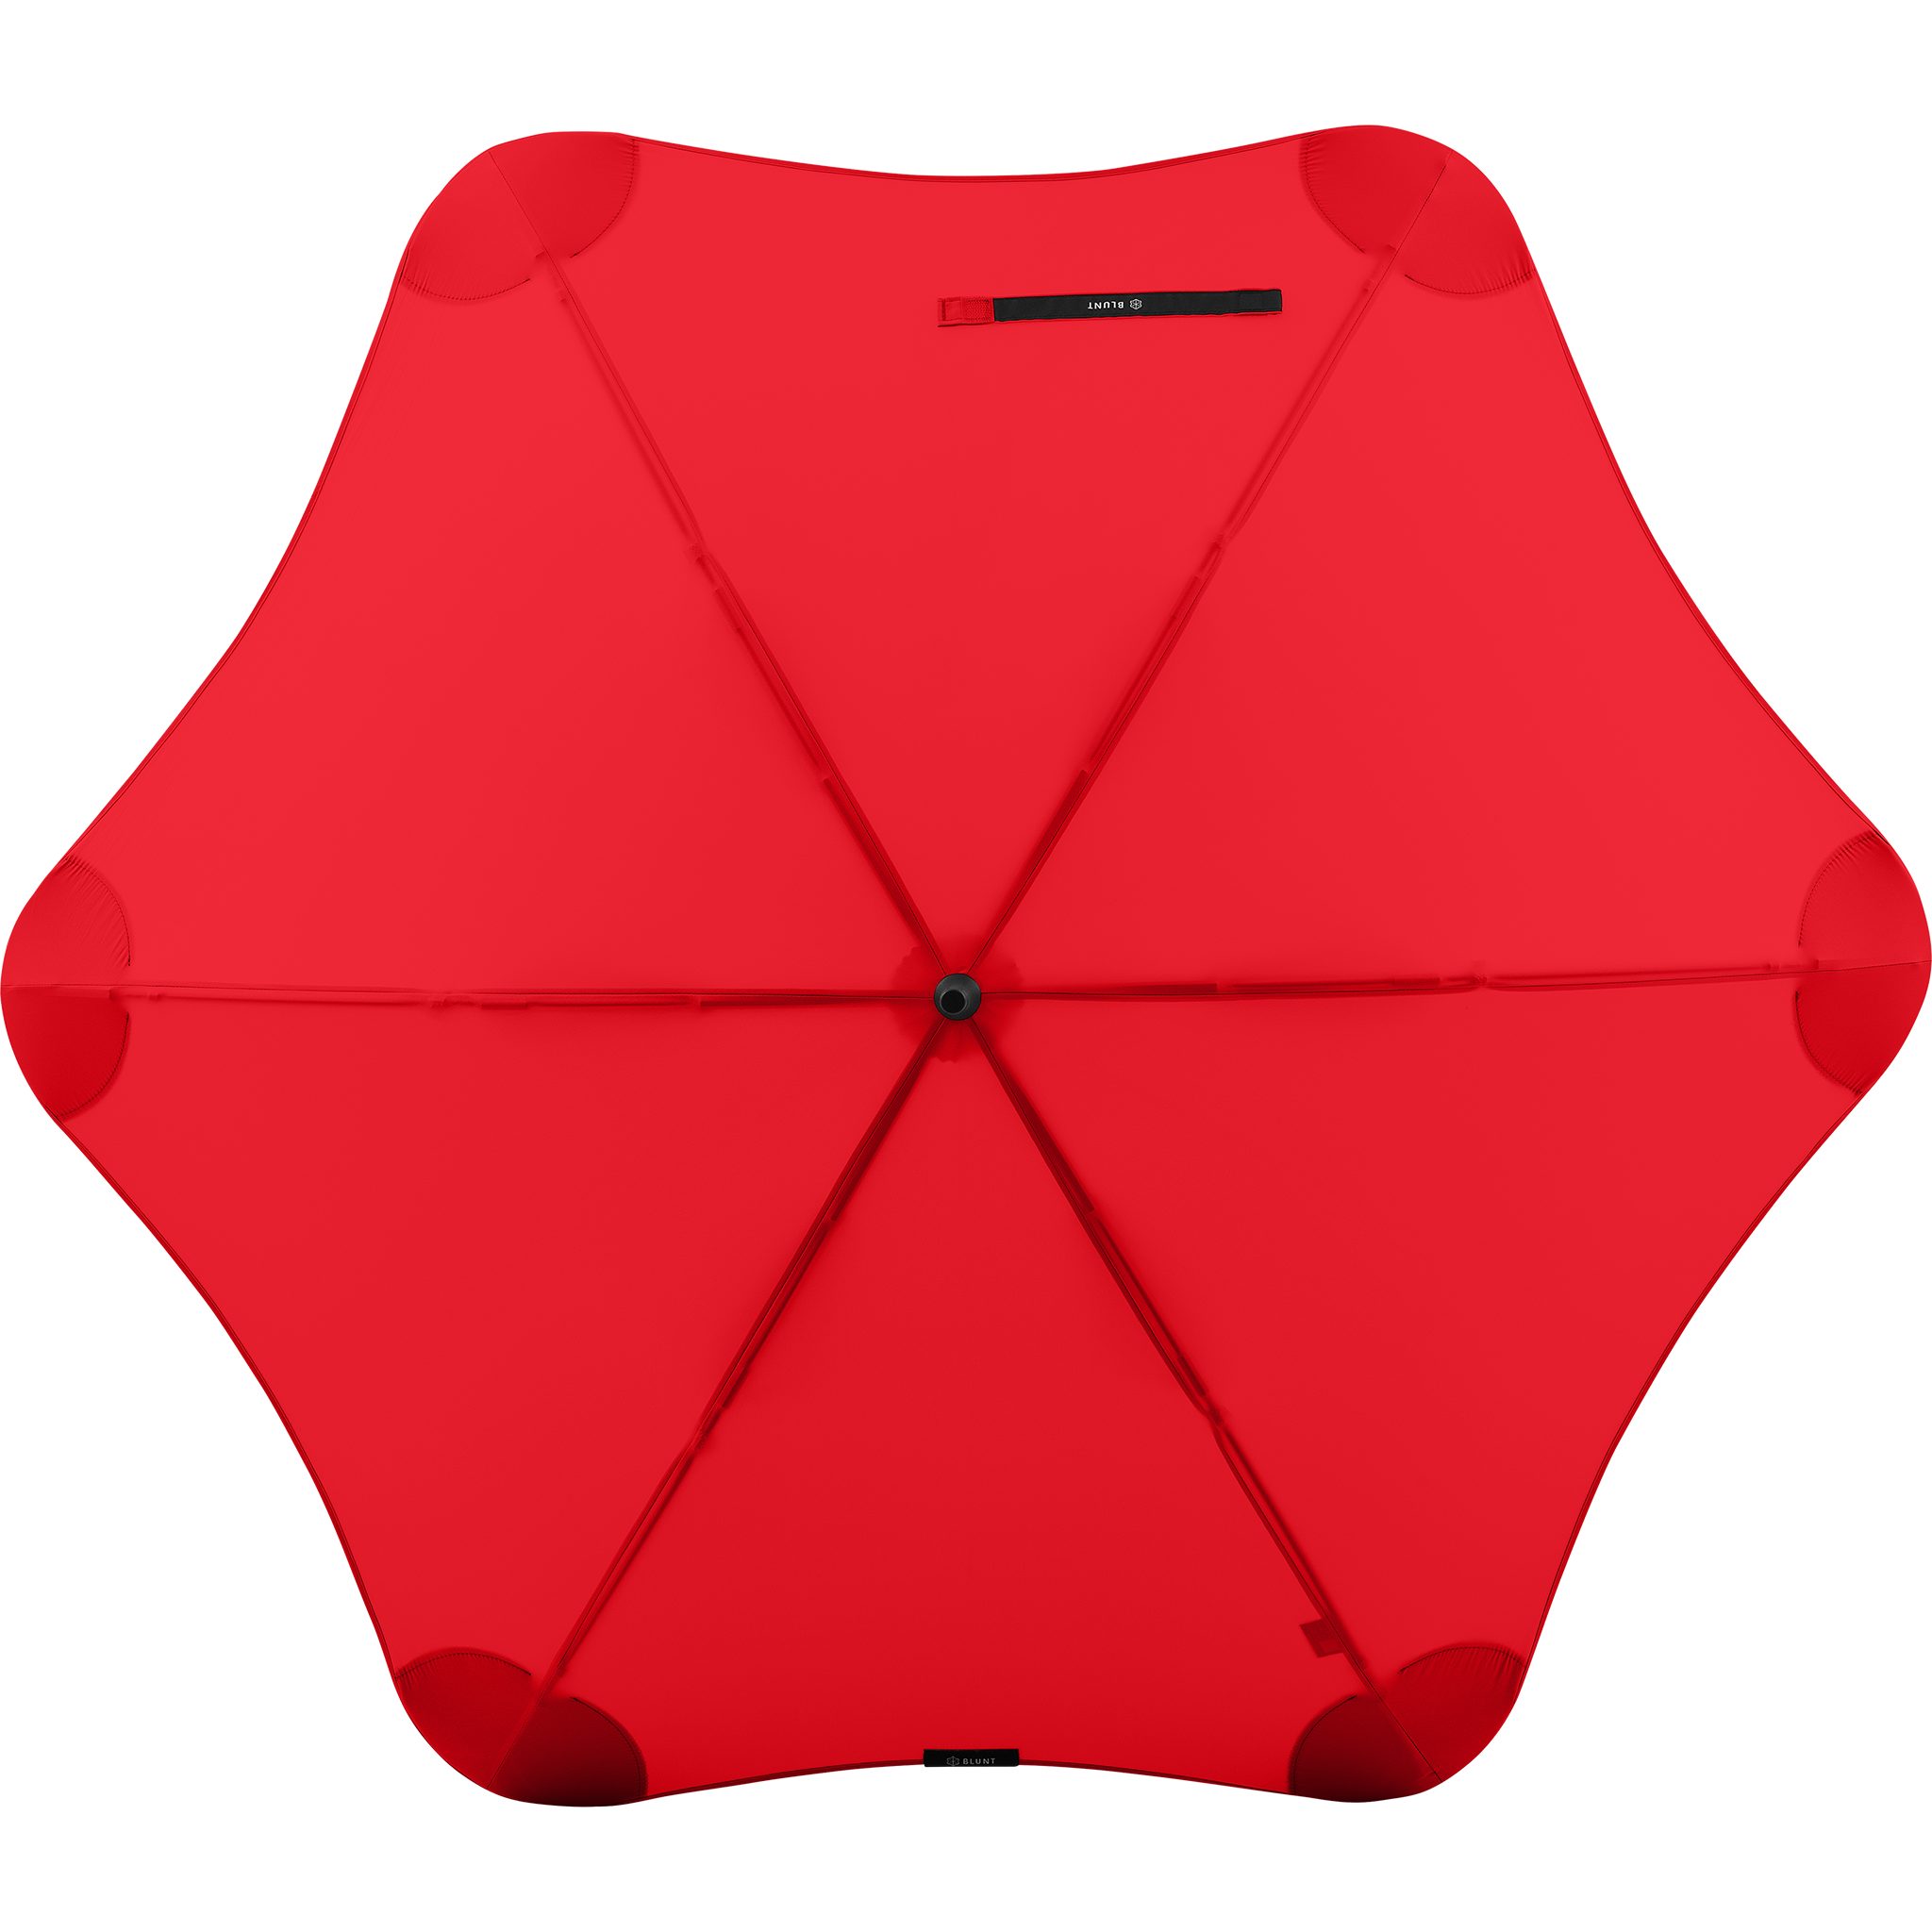 Blunt Stockregenschirm Silhouette Technologie, Classic, patentierte herausragende einzigartige rot